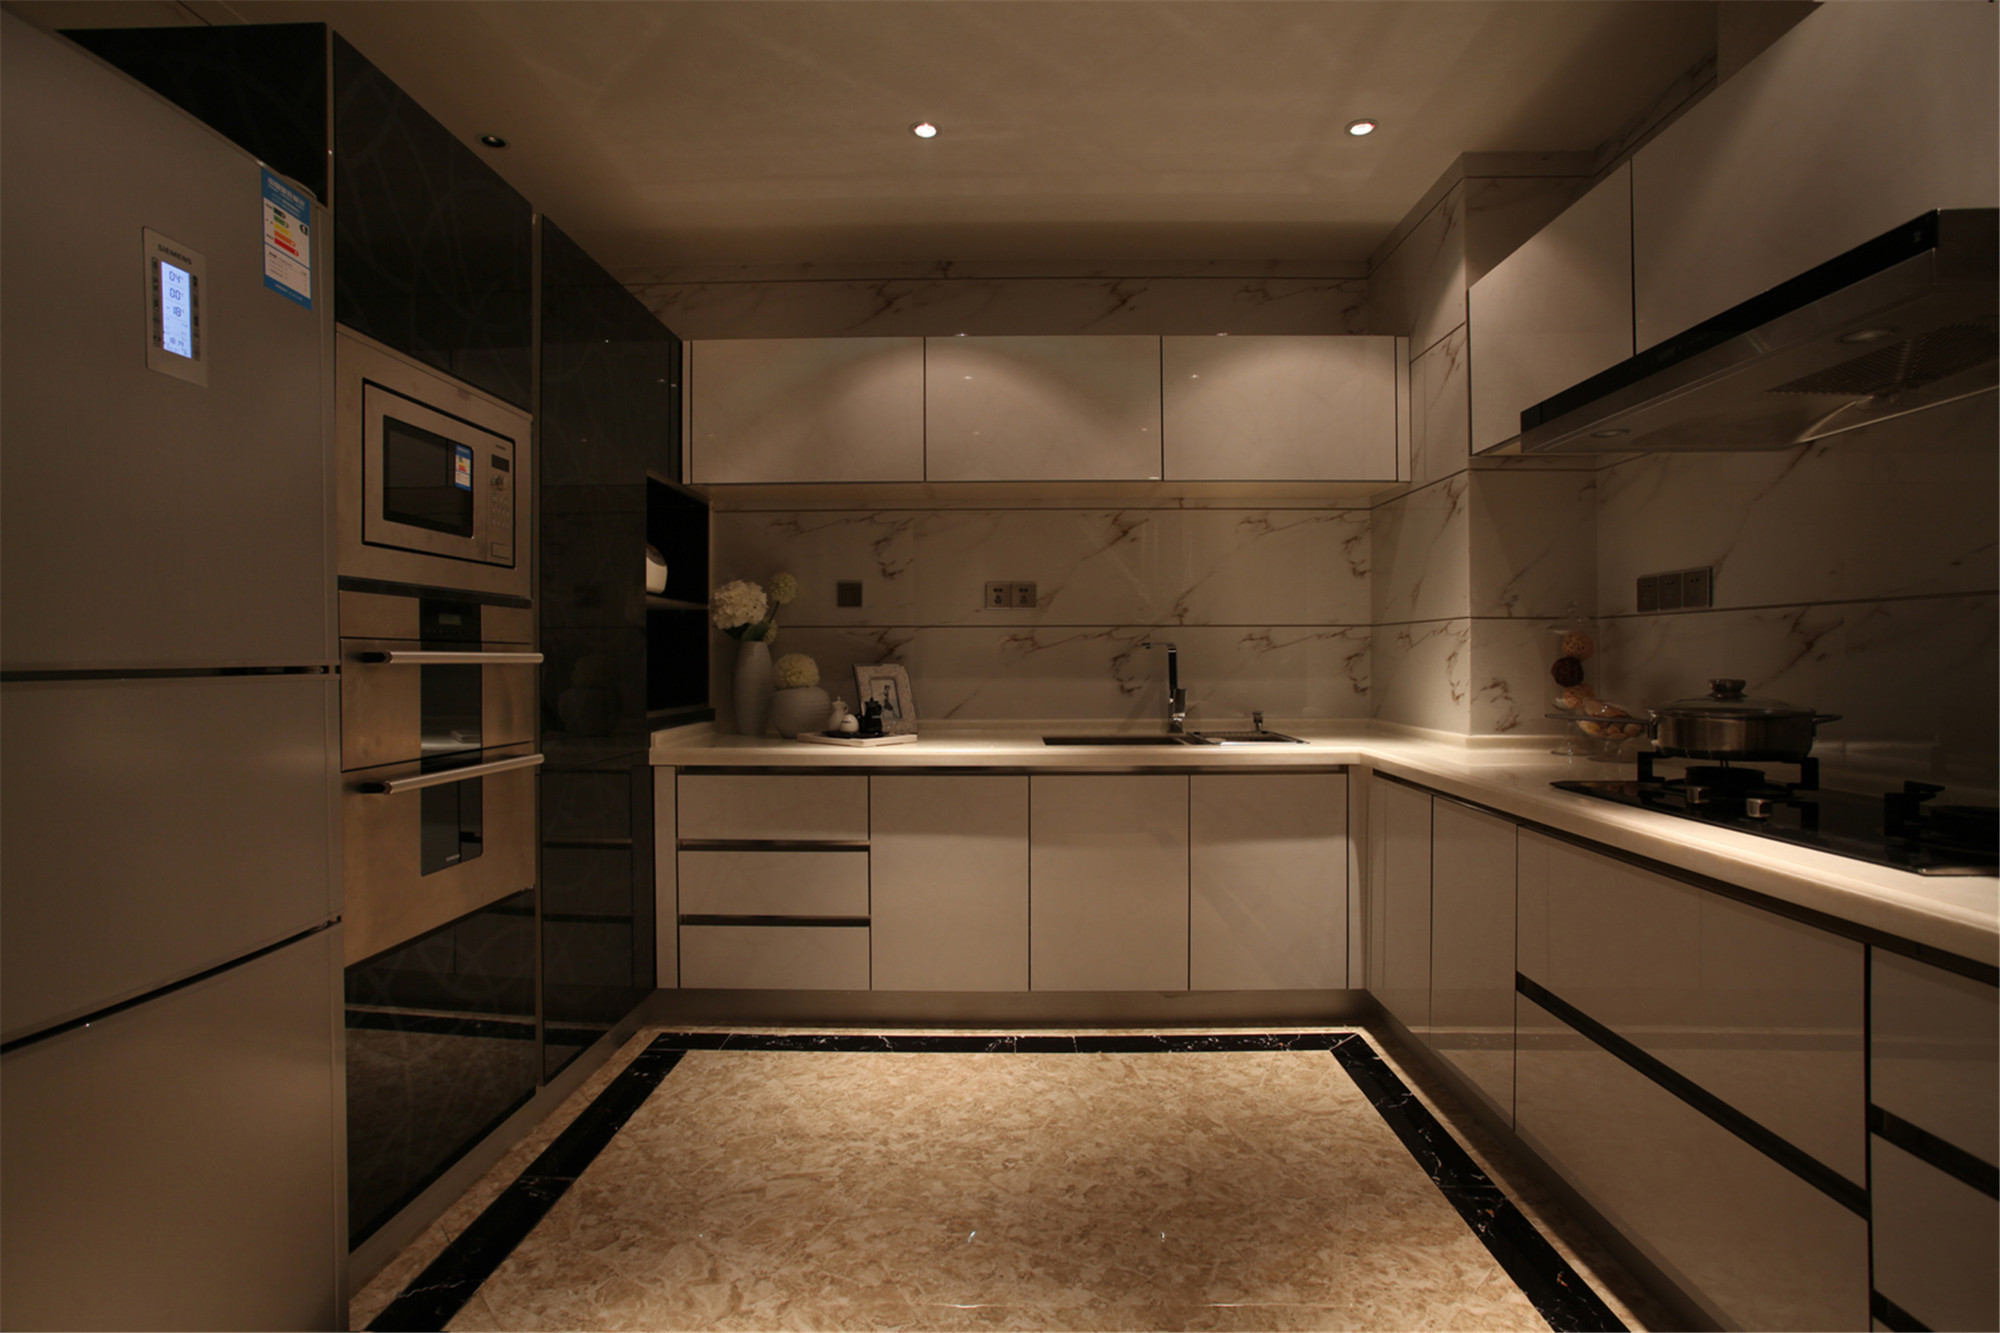 二居室欧式风格家厨房设计图